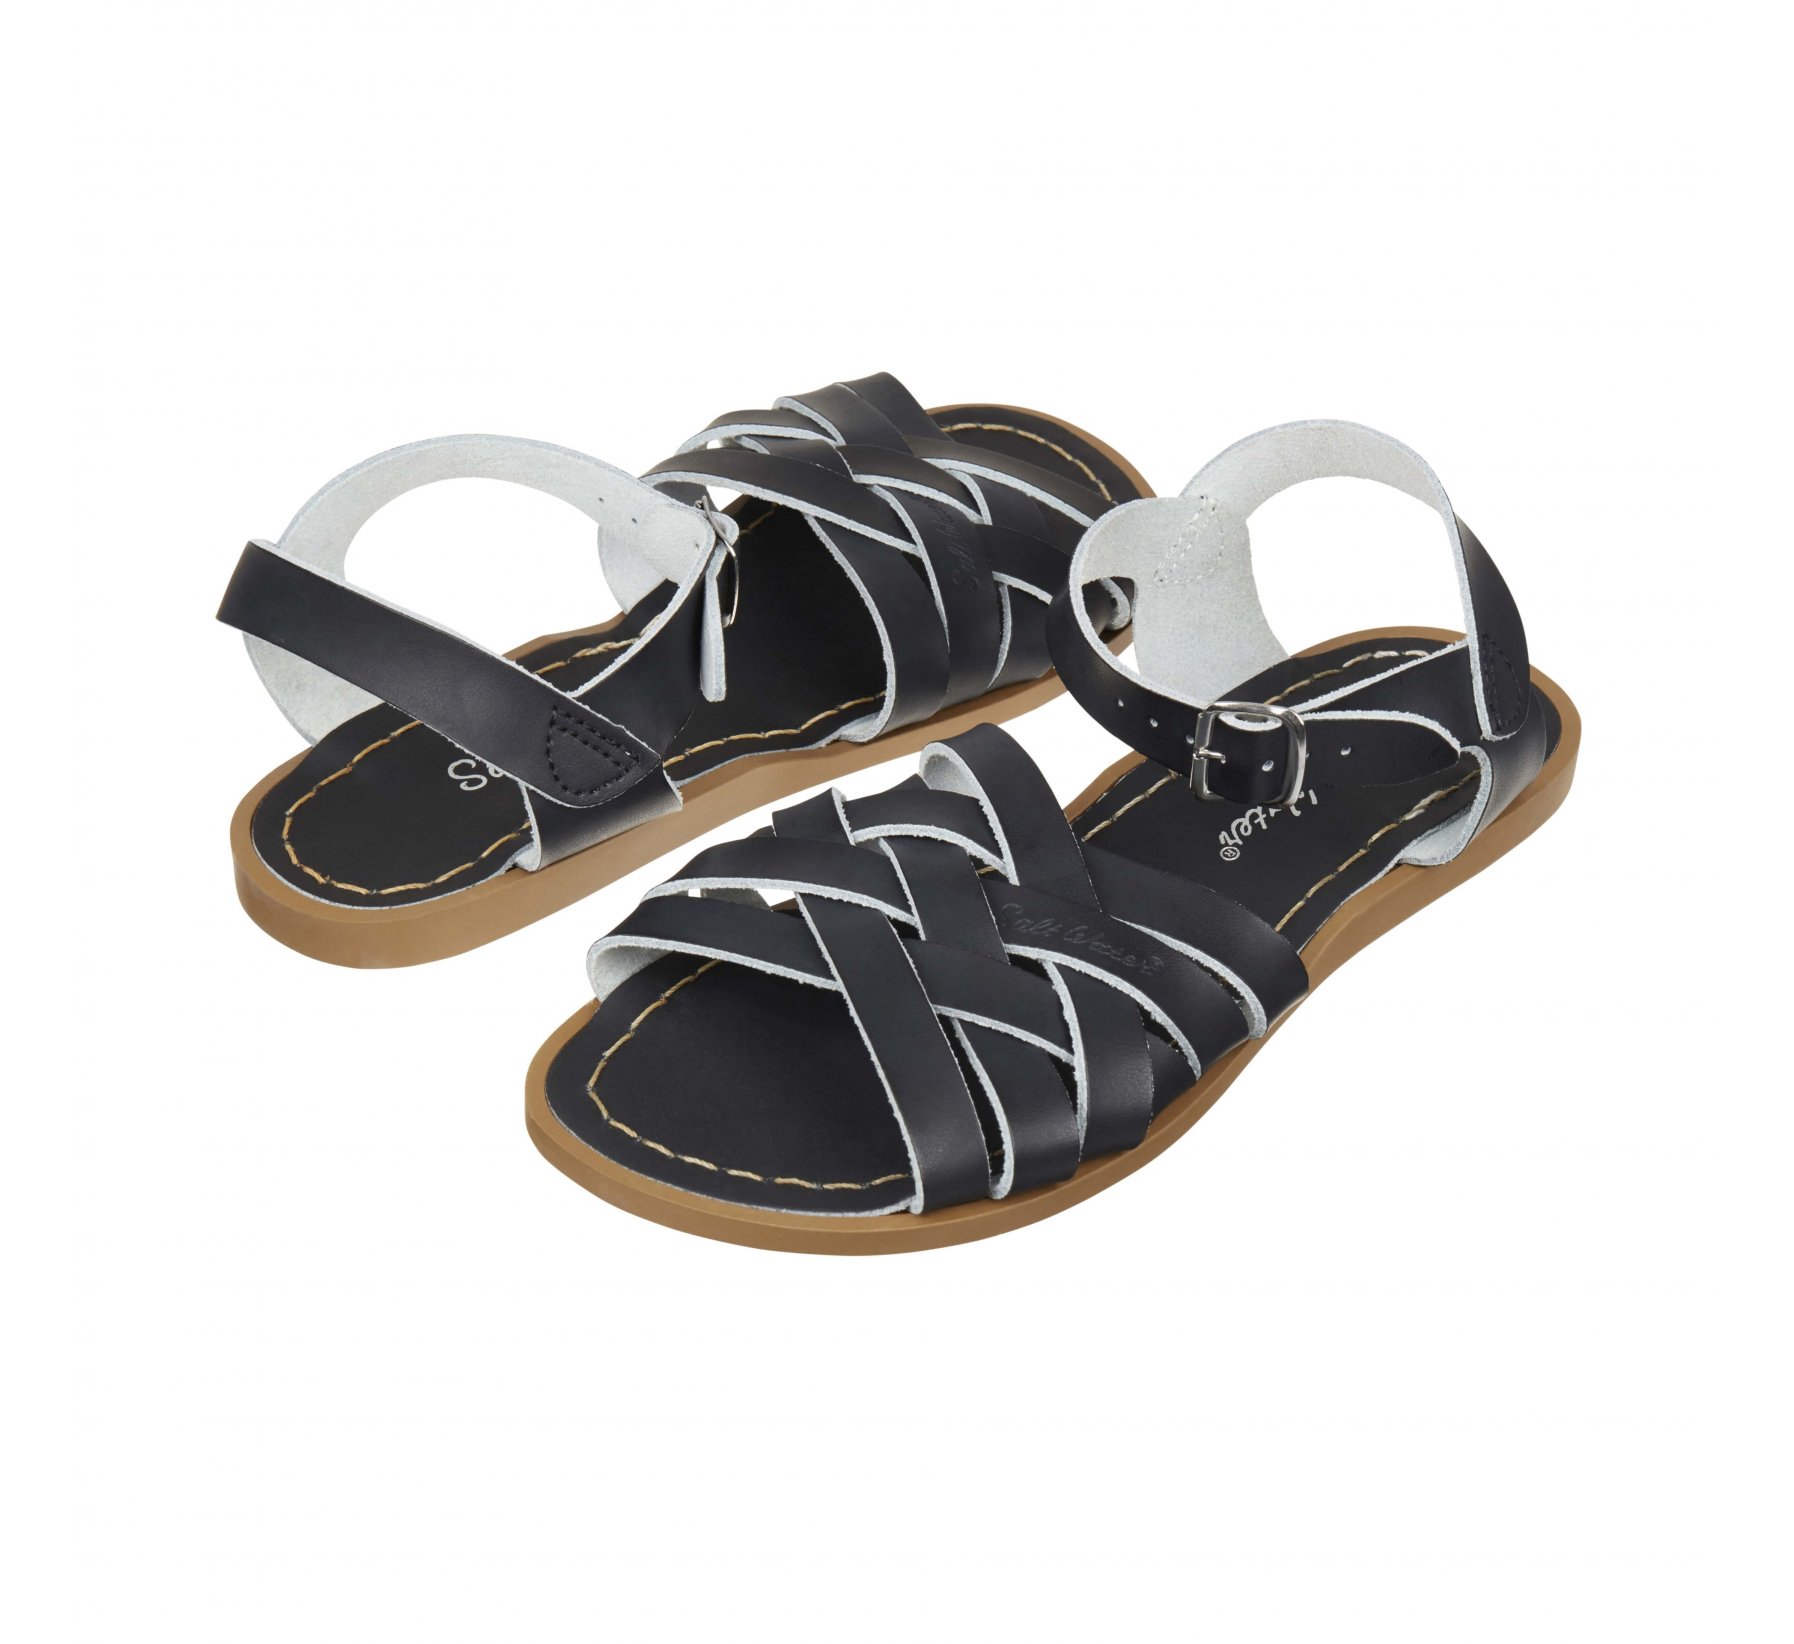 Retro Hitam - Salt Water Sandals